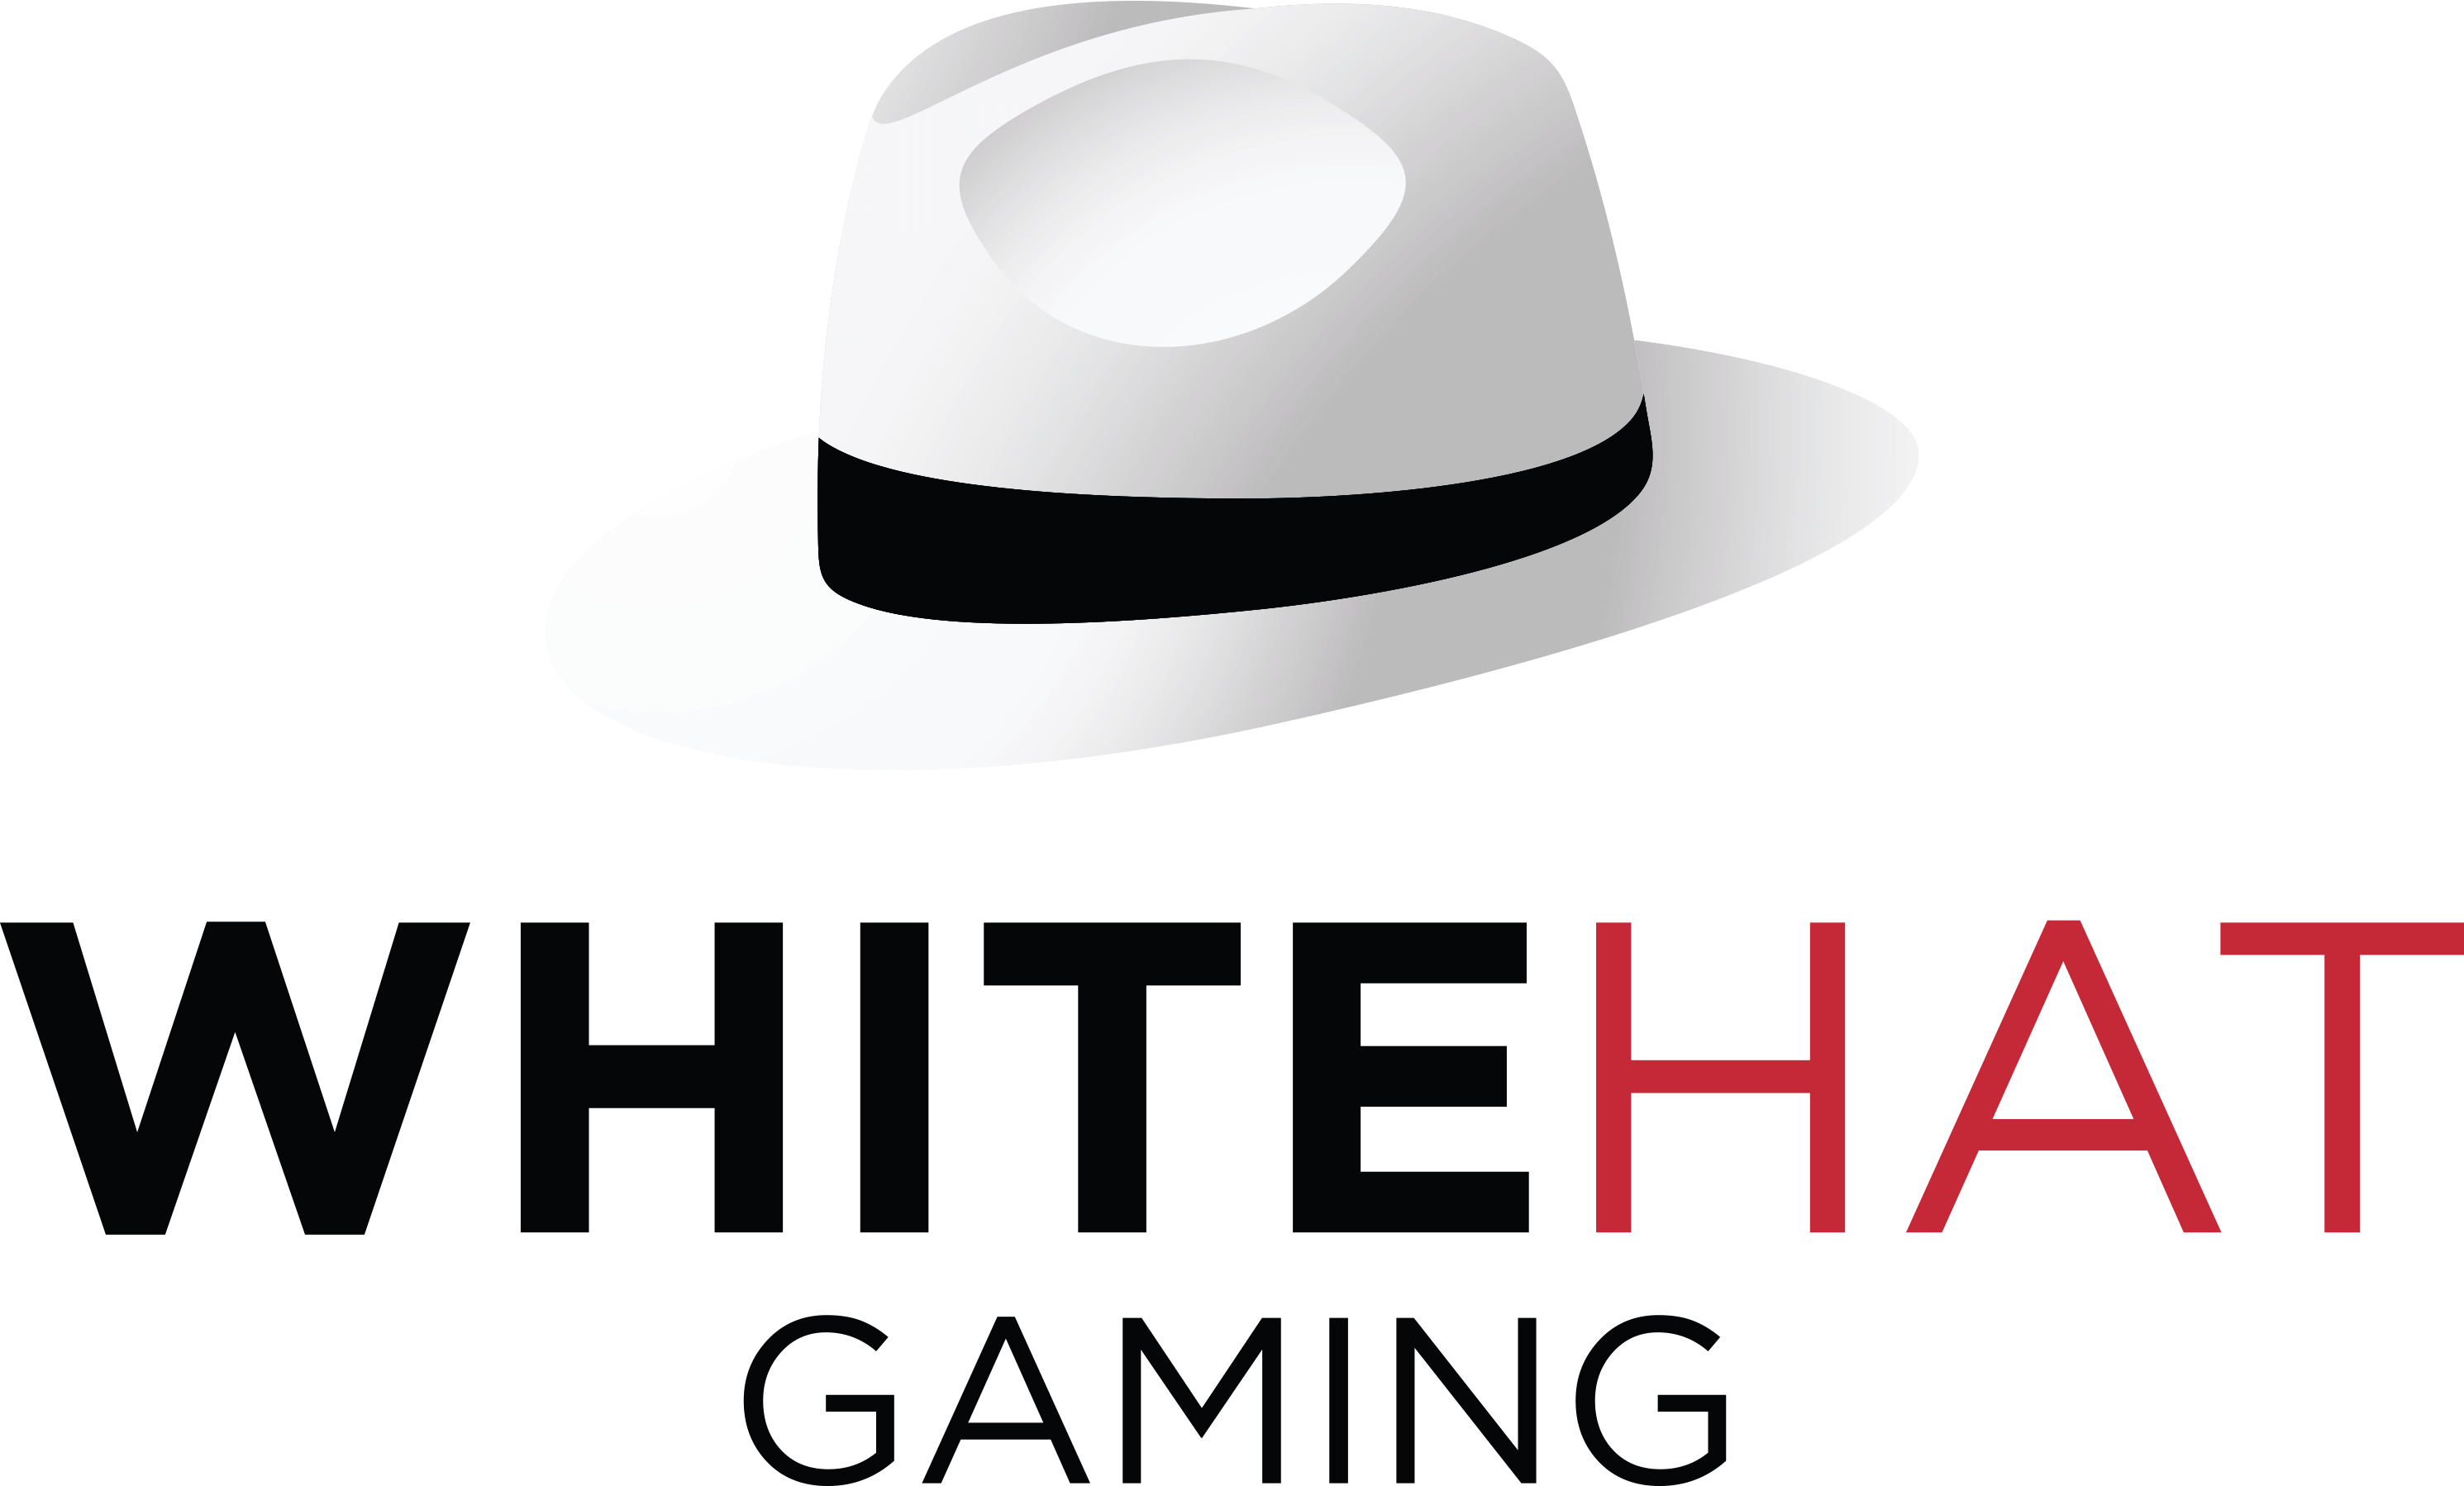 WhiteHat Gaming